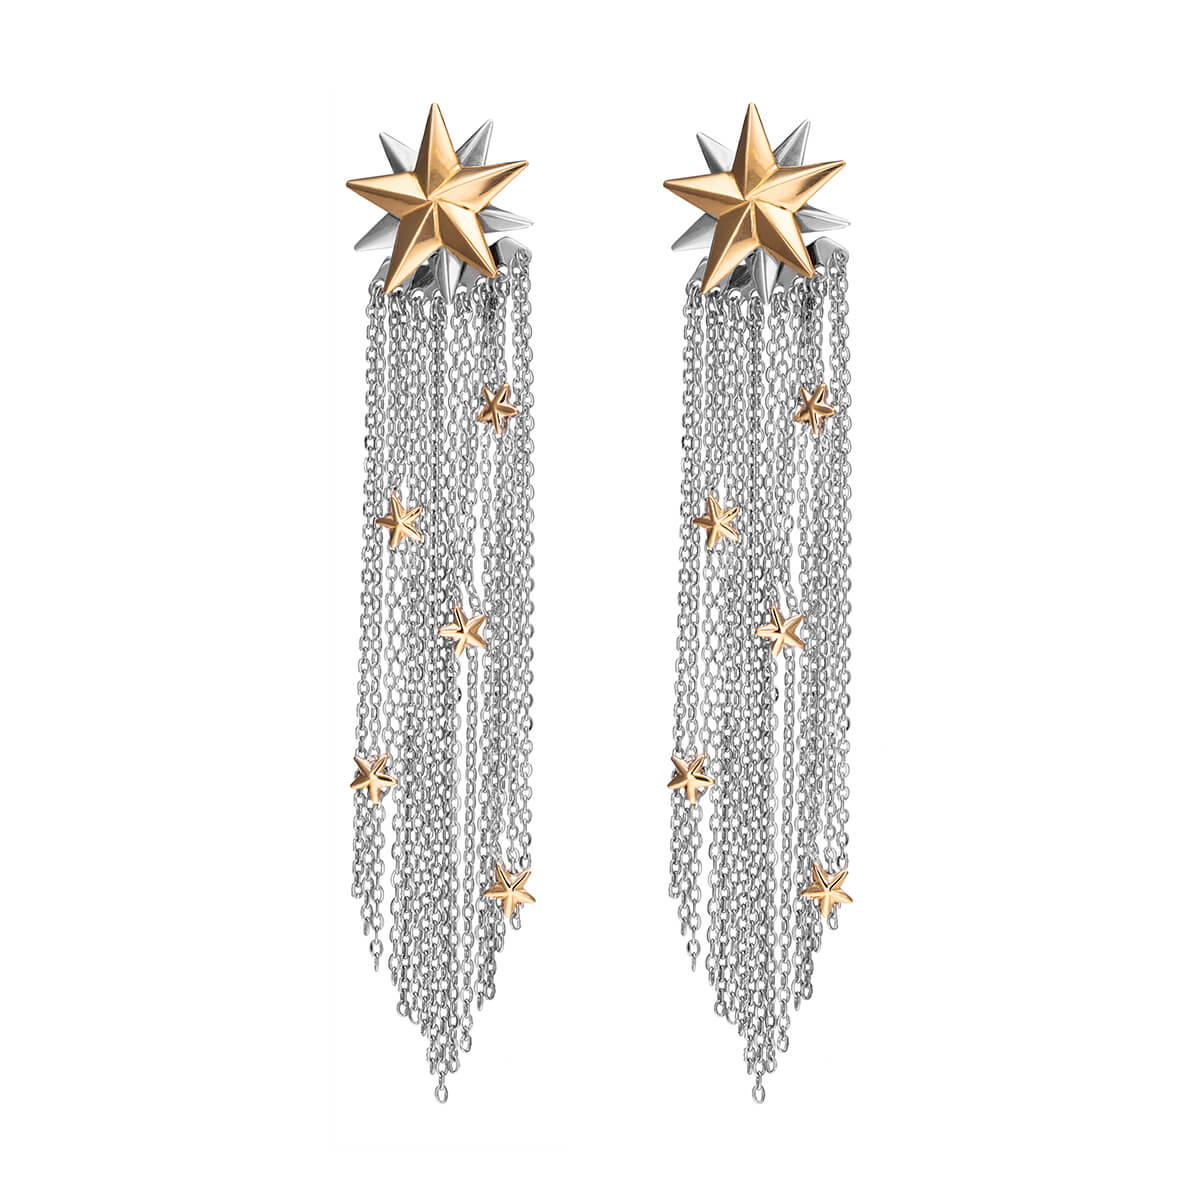 Nova Star Stud Earrings With Tassels